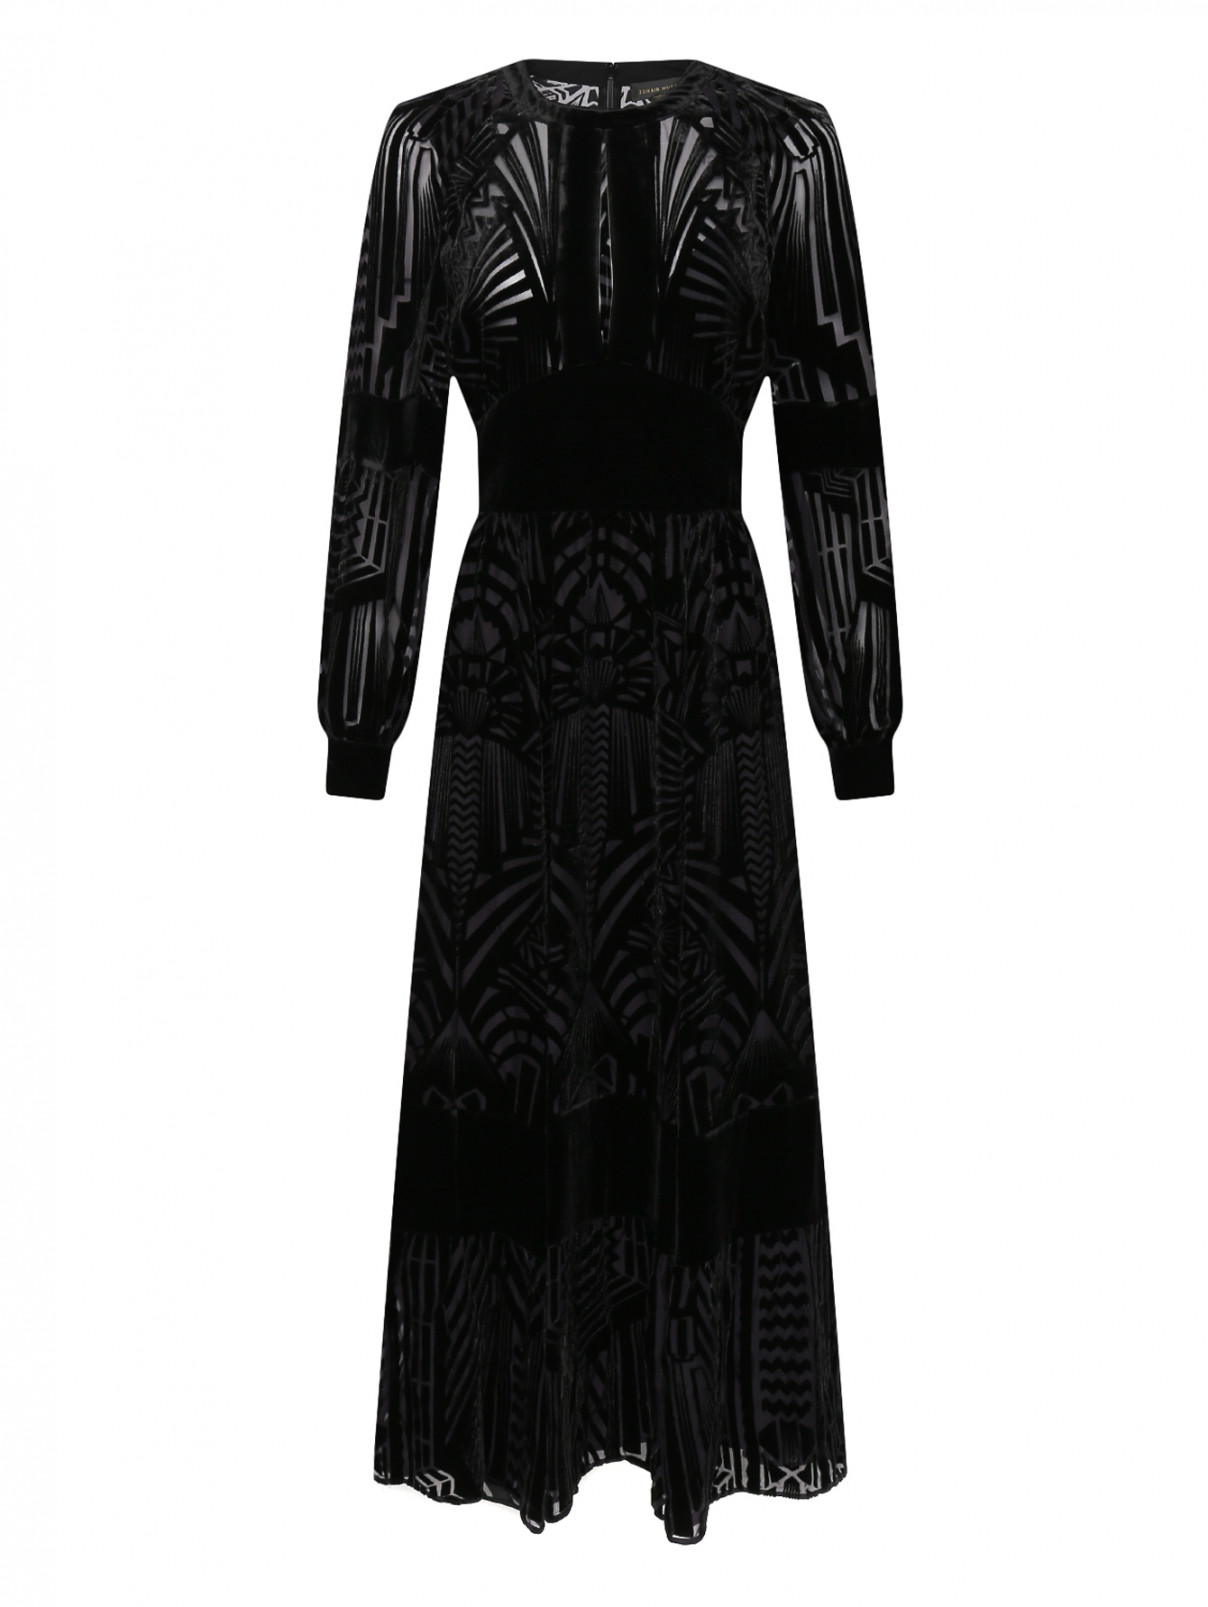 Платье макси с узором и добавлением шелка Zuhair Murad  –  Общий вид  – Цвет:  Черный